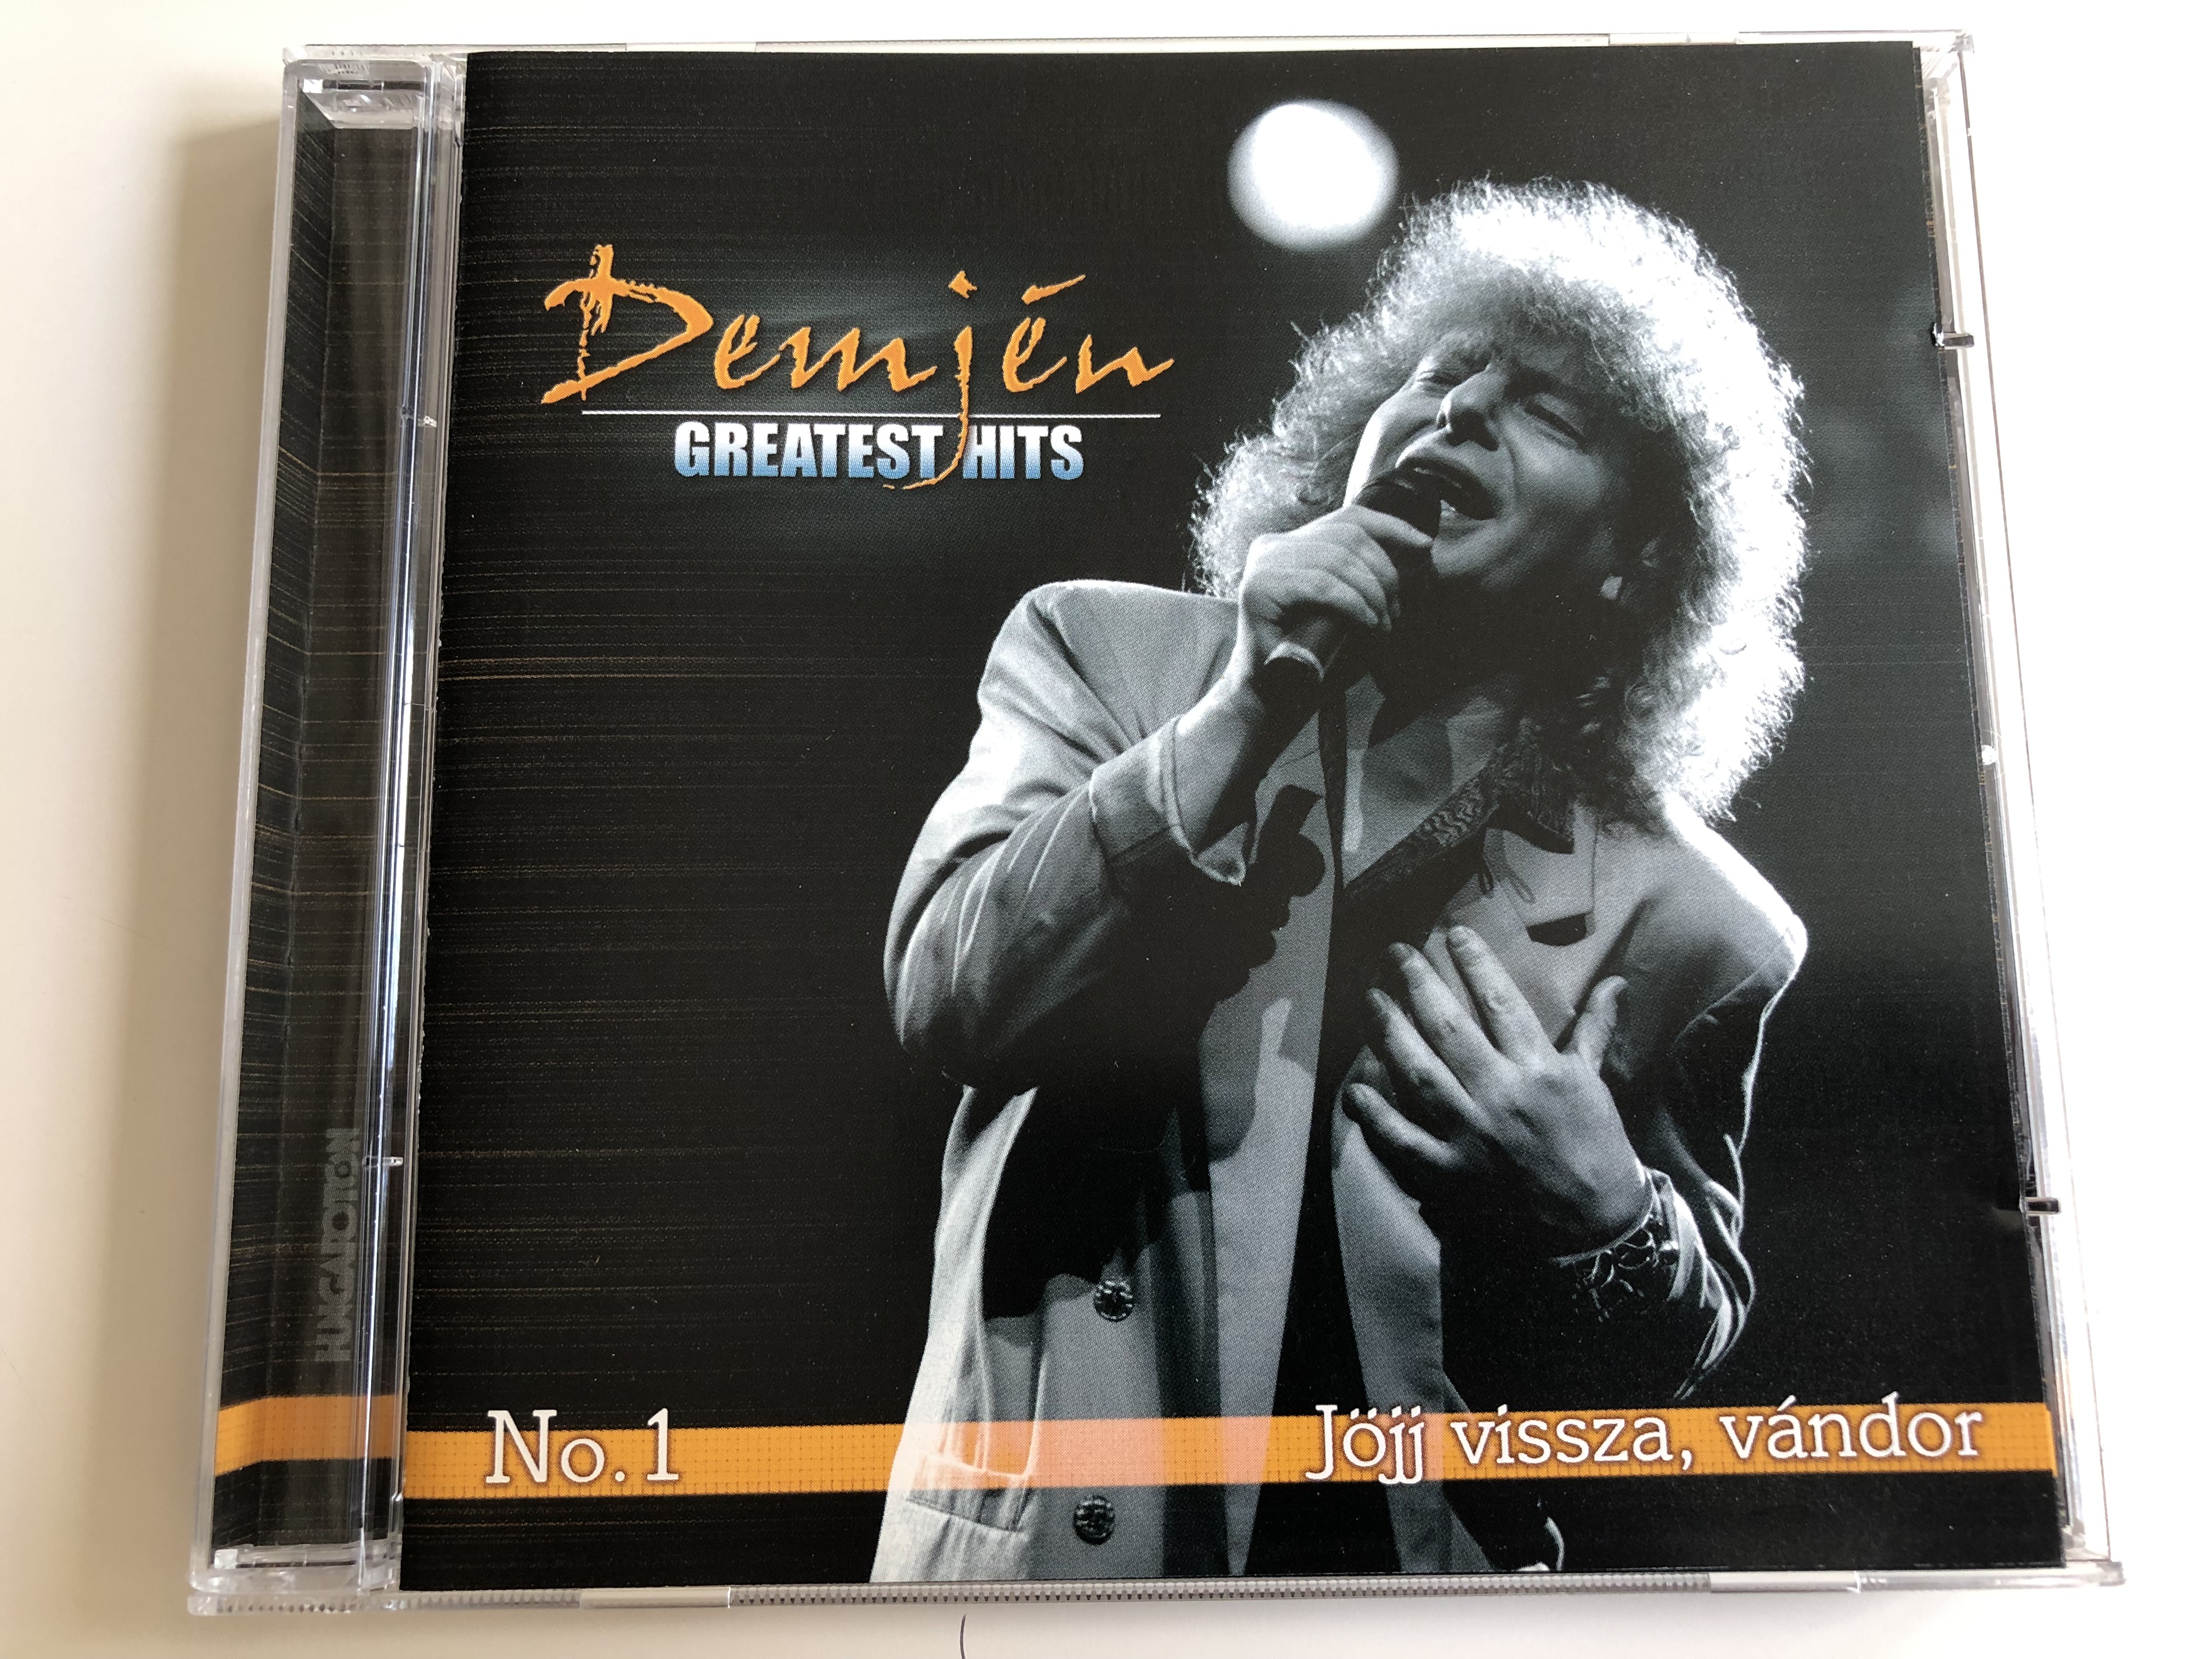 -demj-n-greatest-hits-no.1-j-jj-vissza-v-ndor-hungaroton-audio-cd-2006-hcd-71231-1-.jpg